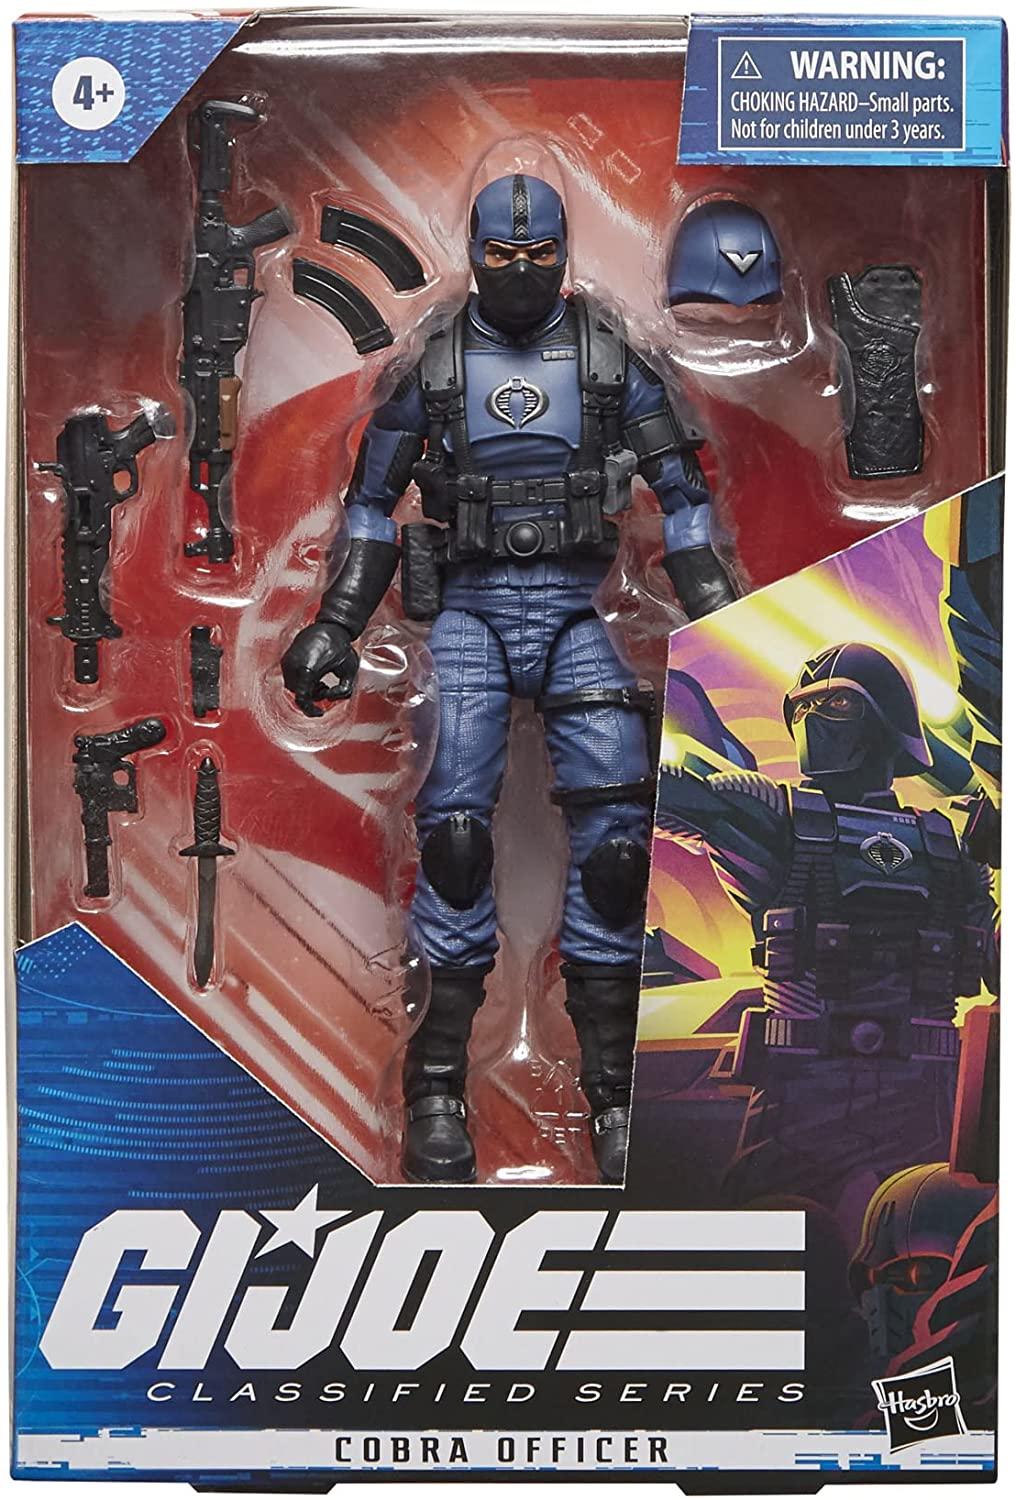 gi-joe-classified-series-cobra-officer-packaging.jpg